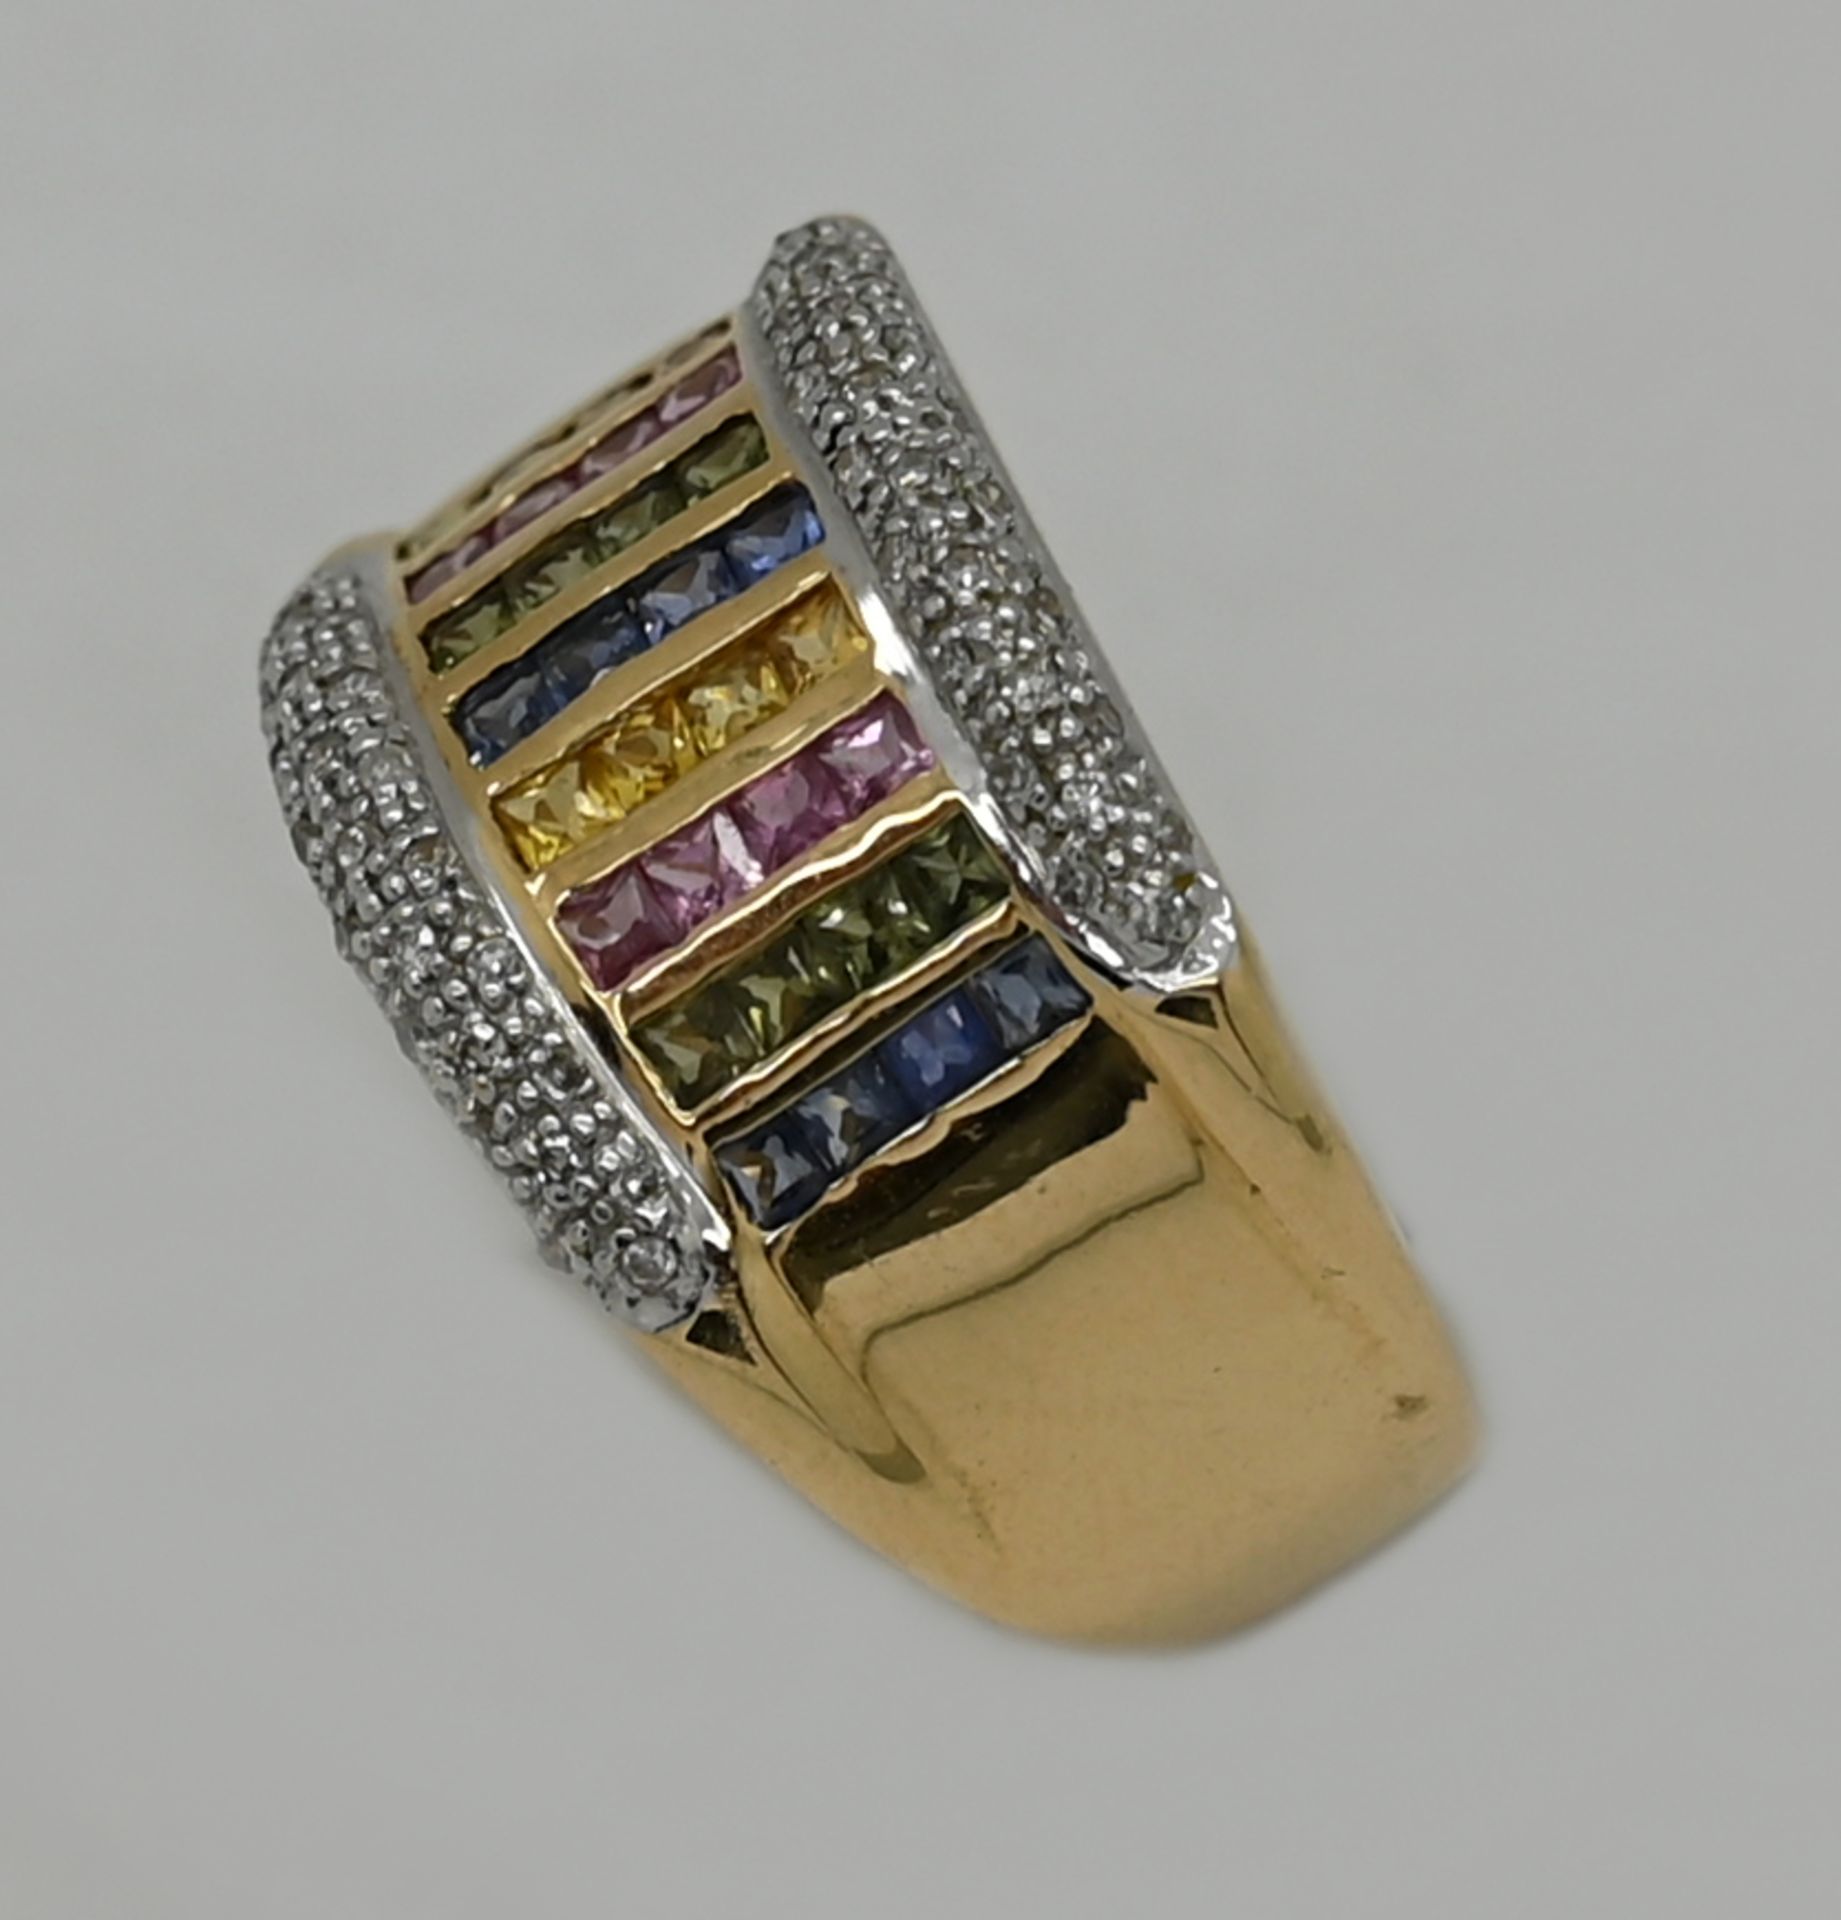 1 Damenring GG 14ct. mit multicolor Edelsteinen sowie Diamanten, Ringgröße ca. 66, min. Tsp. - Bild 2 aus 2